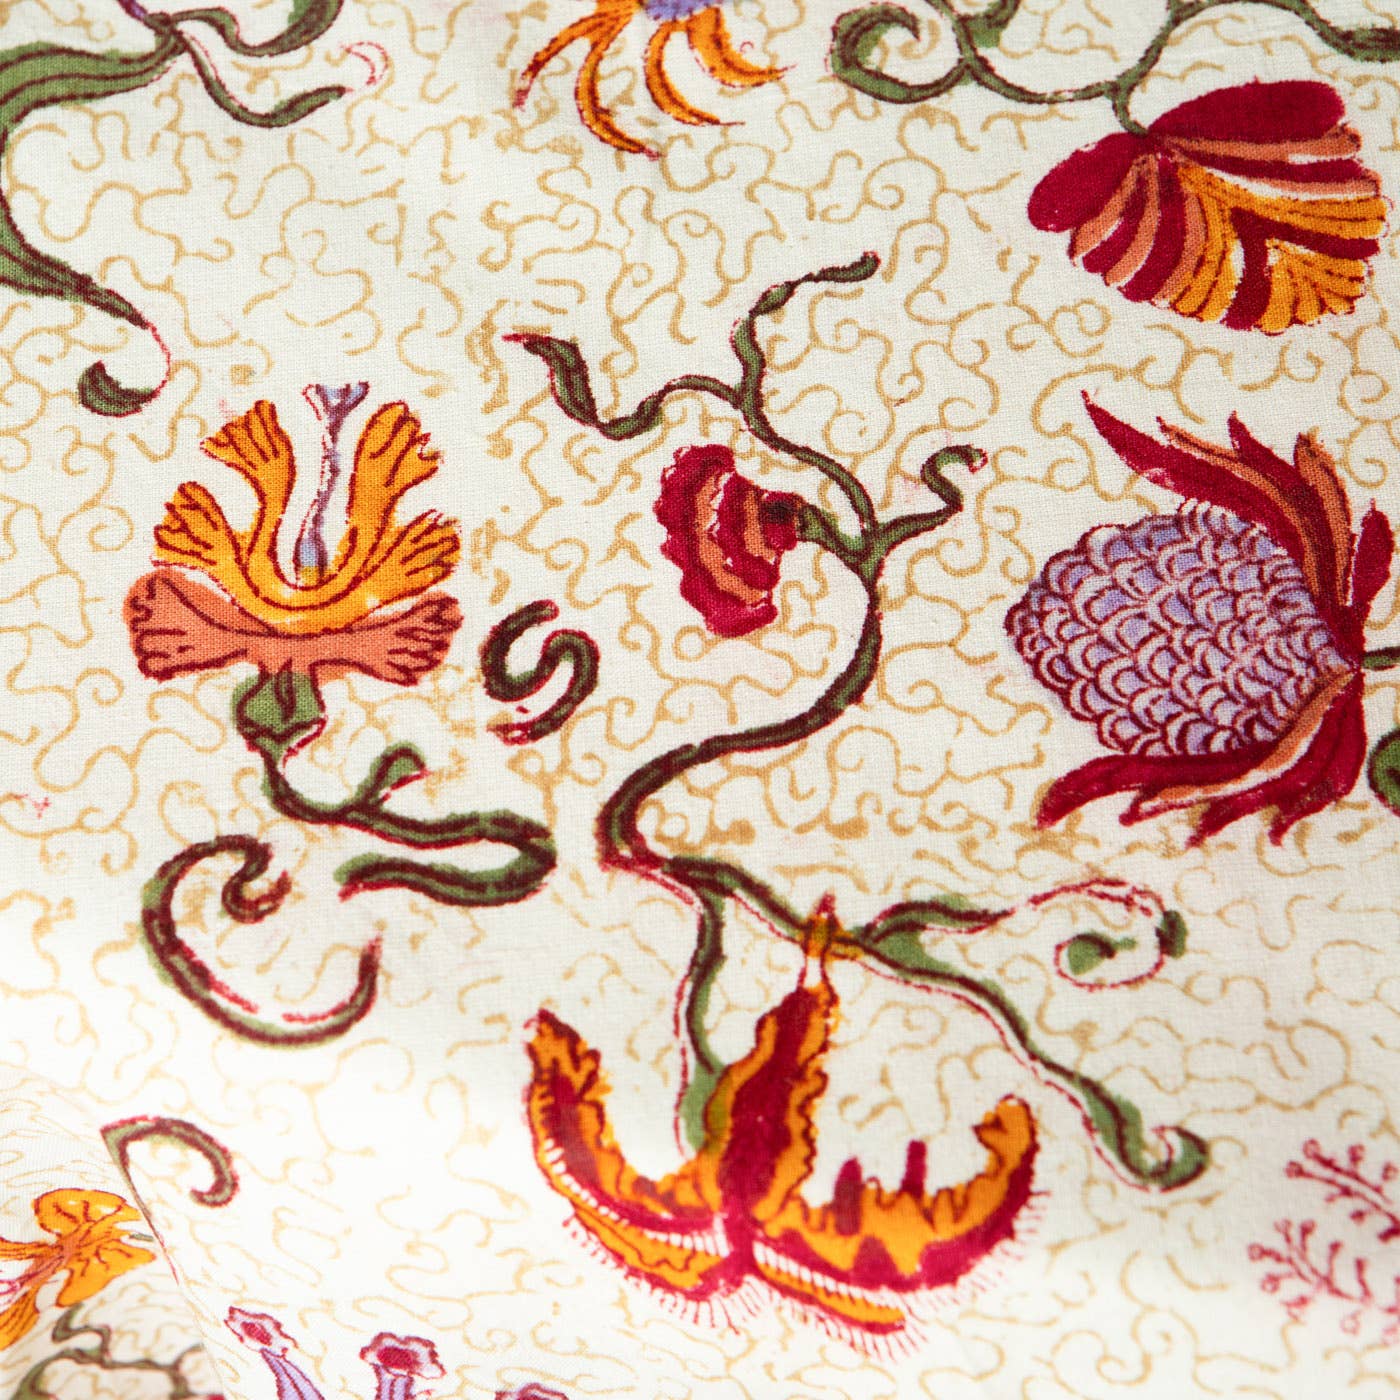 Fleurs des Indes Tablecloths: 71" x 128"